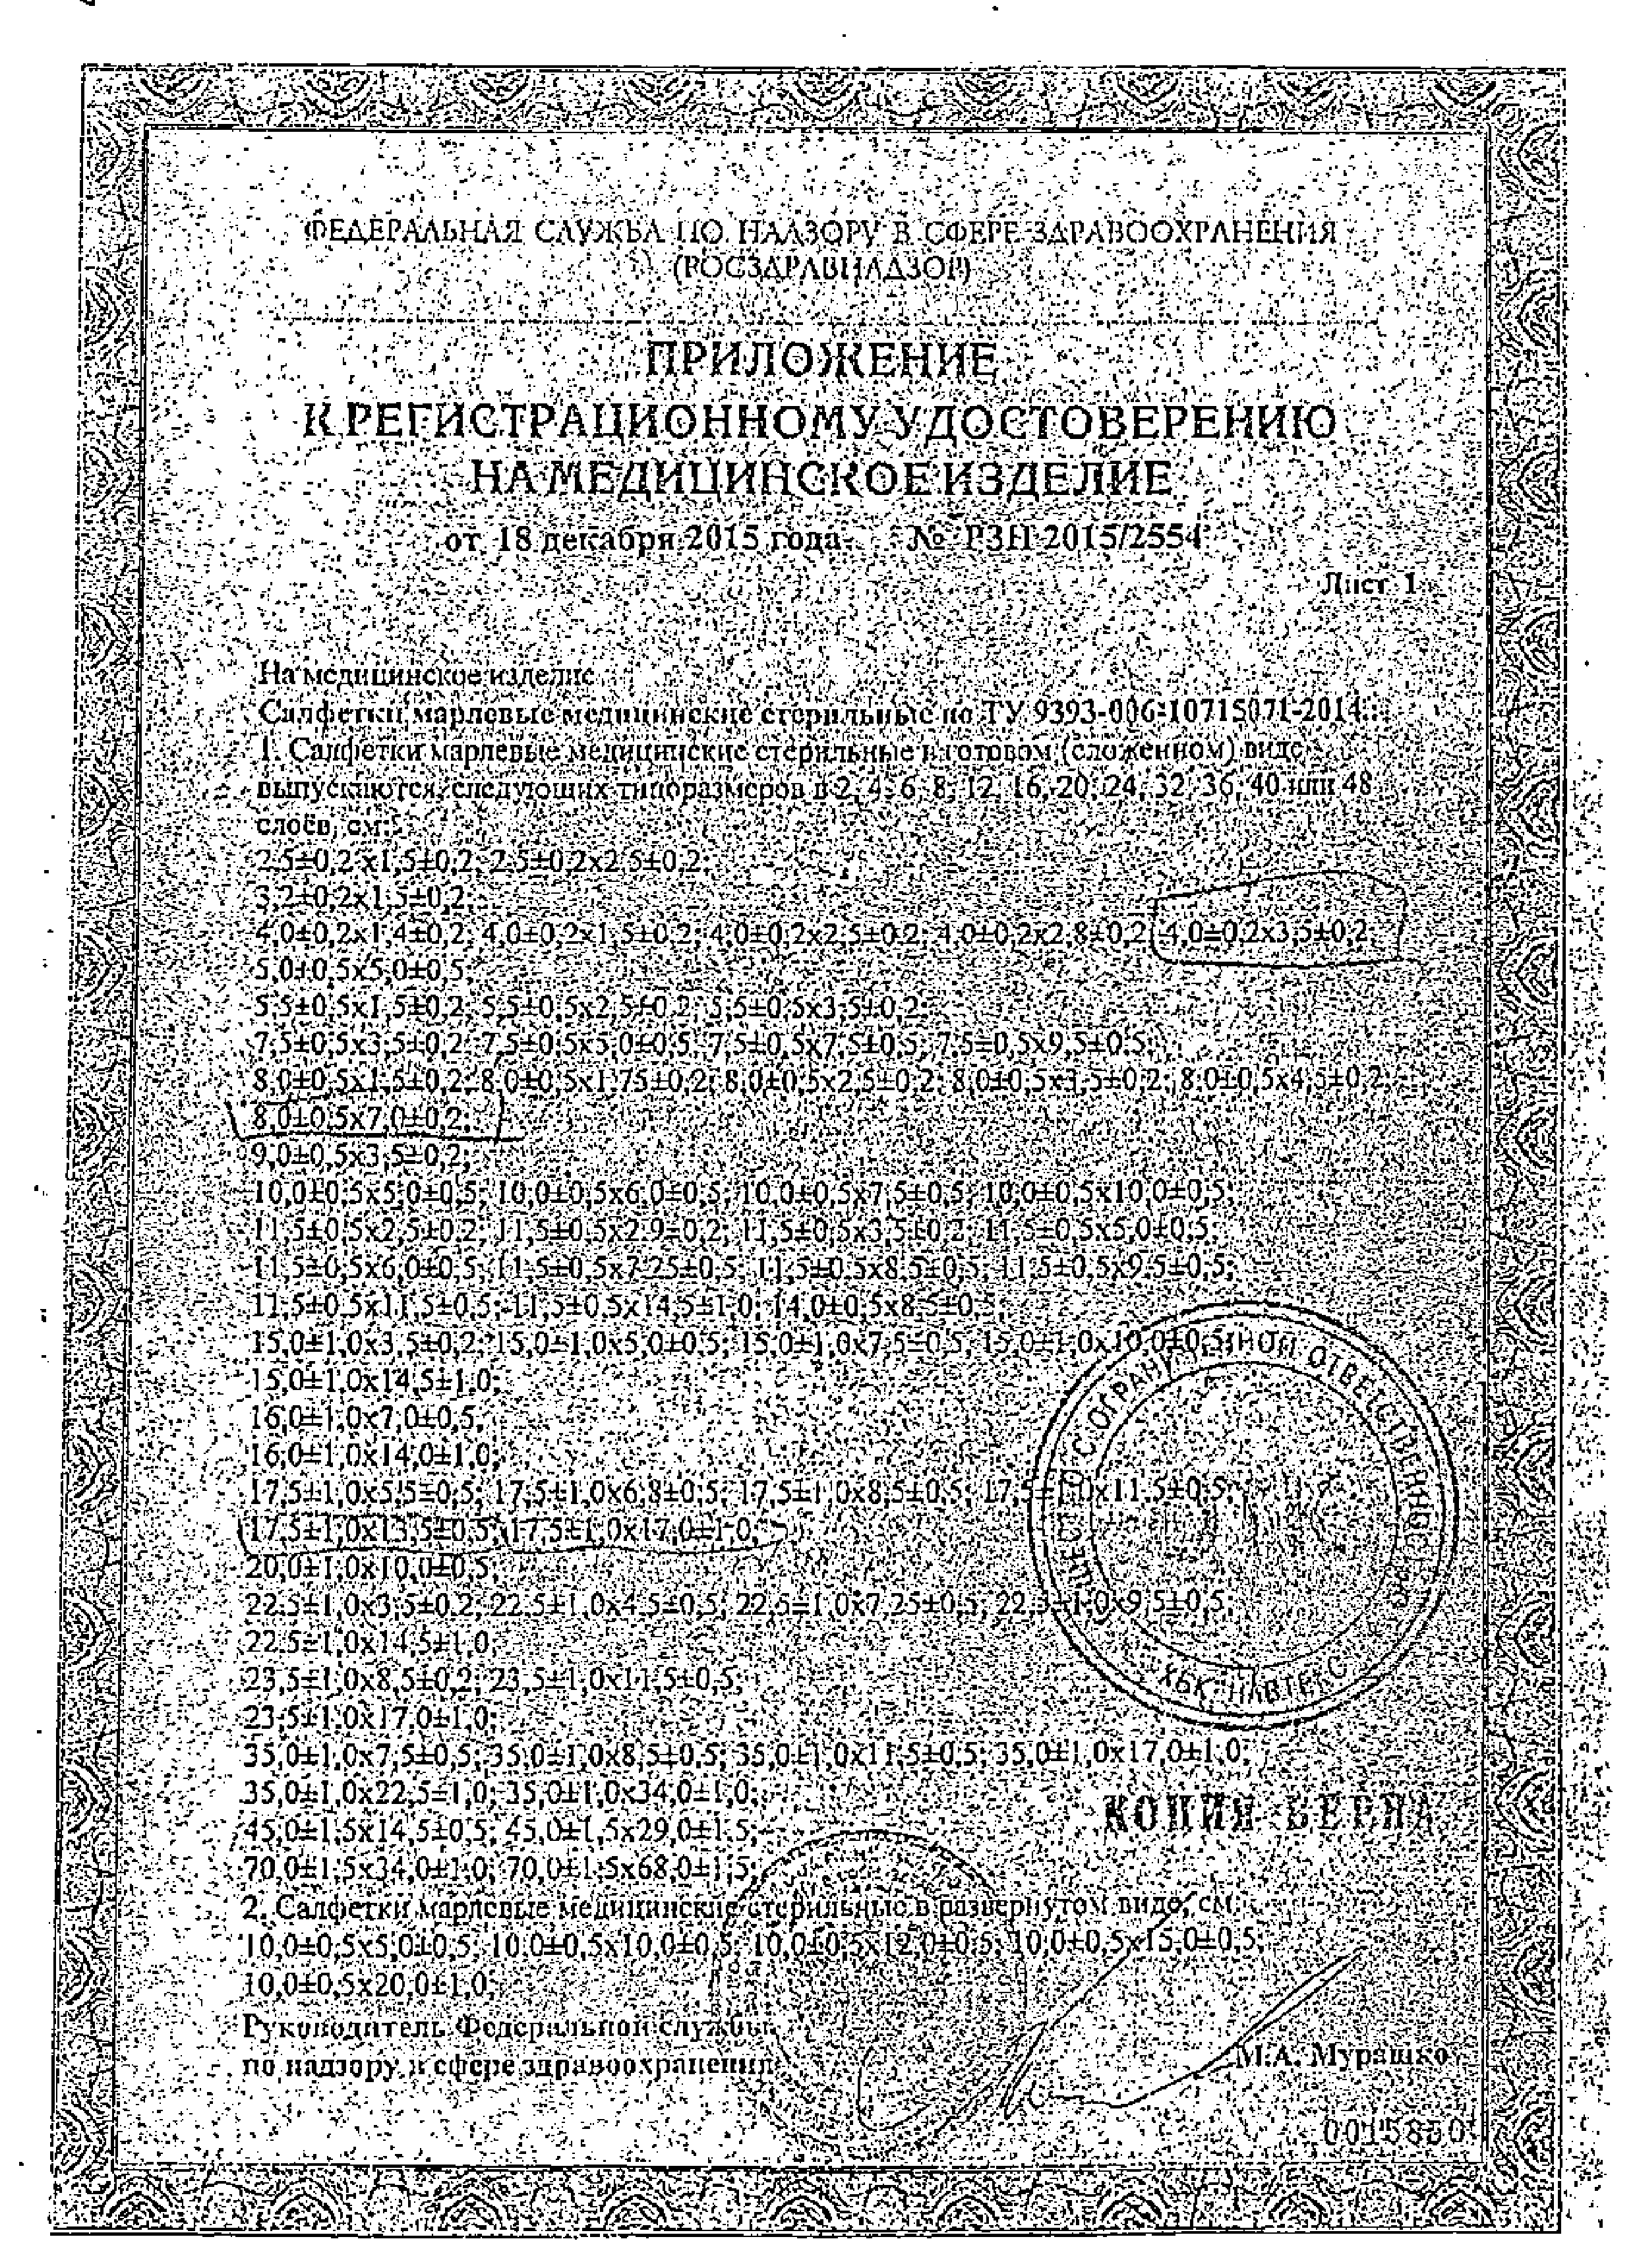 Клинса салфетки марлевые стерильные сертификат